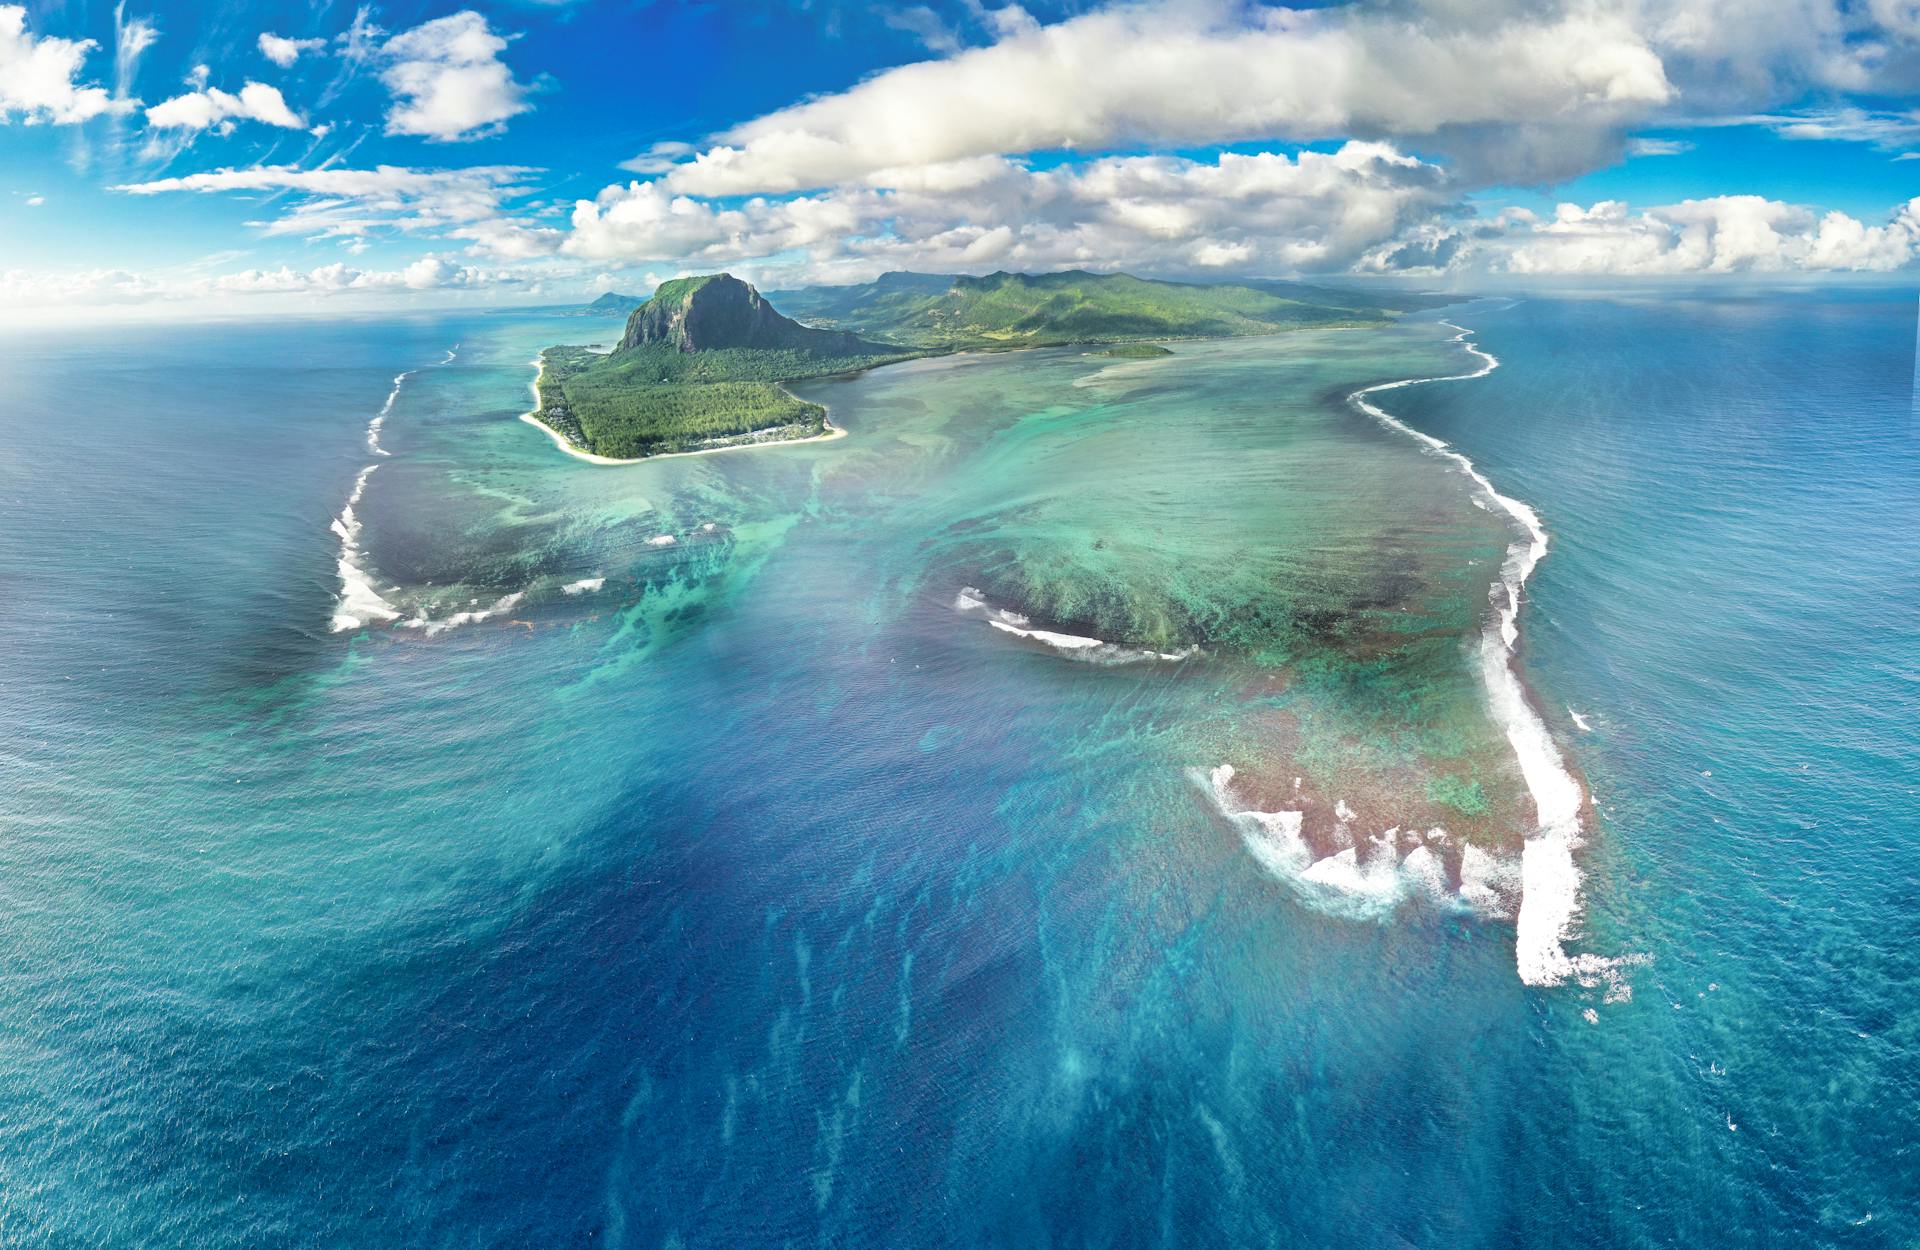 Отправляясь на Маврикий, выбирайте место у иллюминатора: виды на взлёте и посадке открываются совершенно незабываемые.